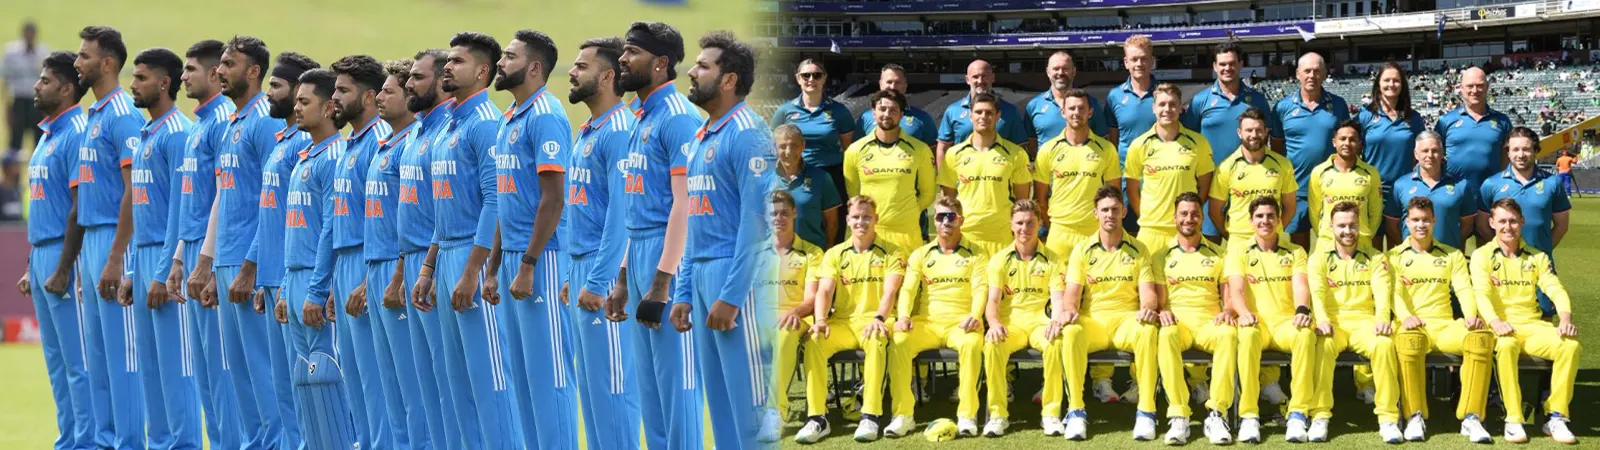 IND vs AUS World Cup Update : ऑस्ट्रेलिया के Against World Cup मैच में Captain रोहित ने इन खिलाड़ियों को किया बाहर!!! जानें आपके पसंदीदा खिलाड़ी को टीम में मिली जगह या नहीं